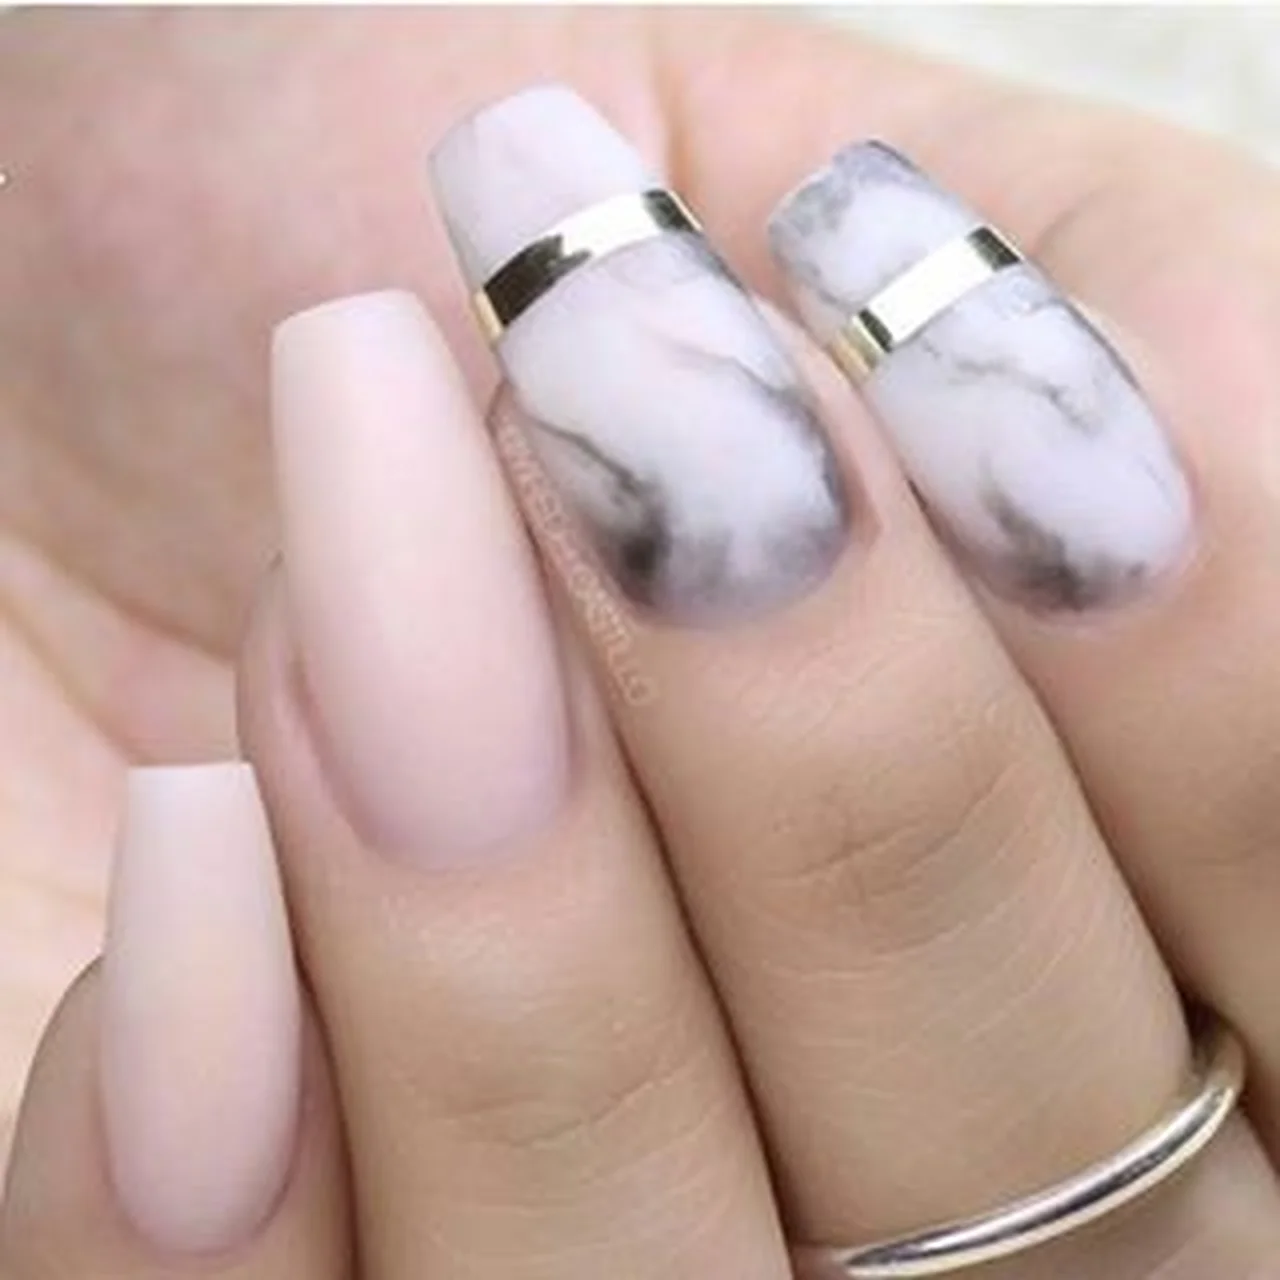 Świetny pomysł na paznokcie ;)